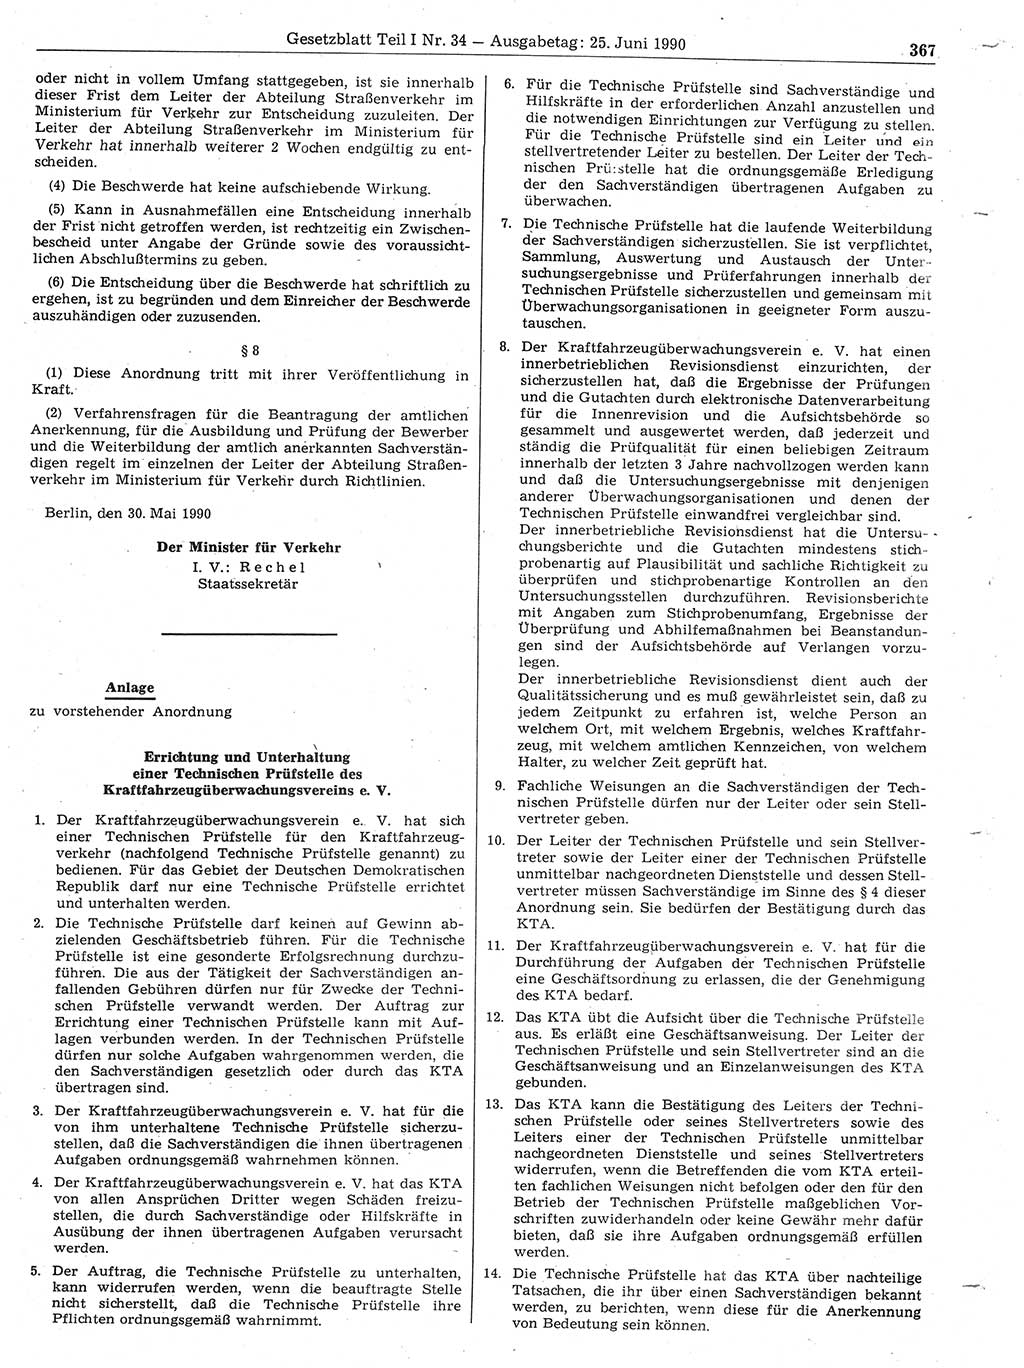 Gesetzblatt (GBl.) der Deutschen Demokratischen Republik (DDR) Teil Ⅰ 1990, Seite 367 (GBl. DDR Ⅰ 1990, S. 367)